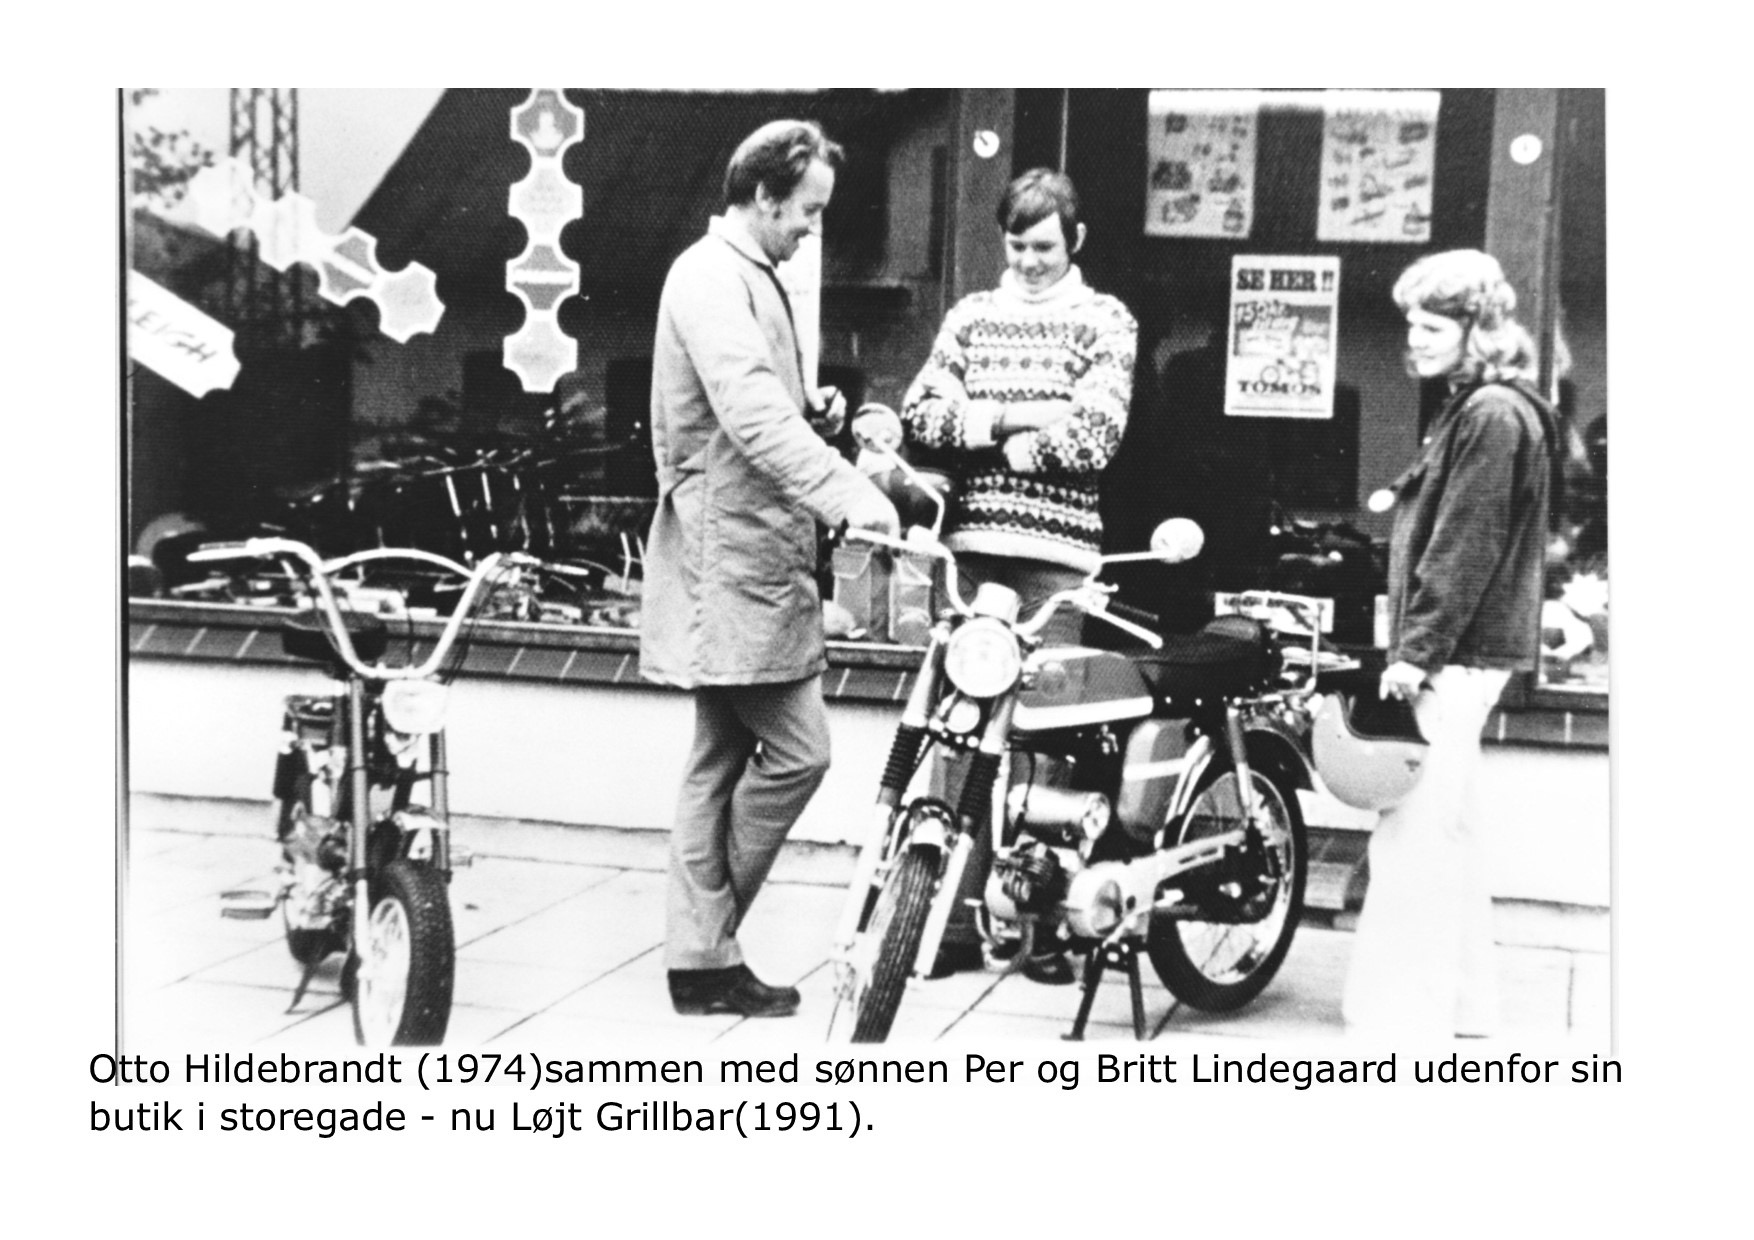 Otto og Per Hildebrandt samt Britt Lindegaard 1974 